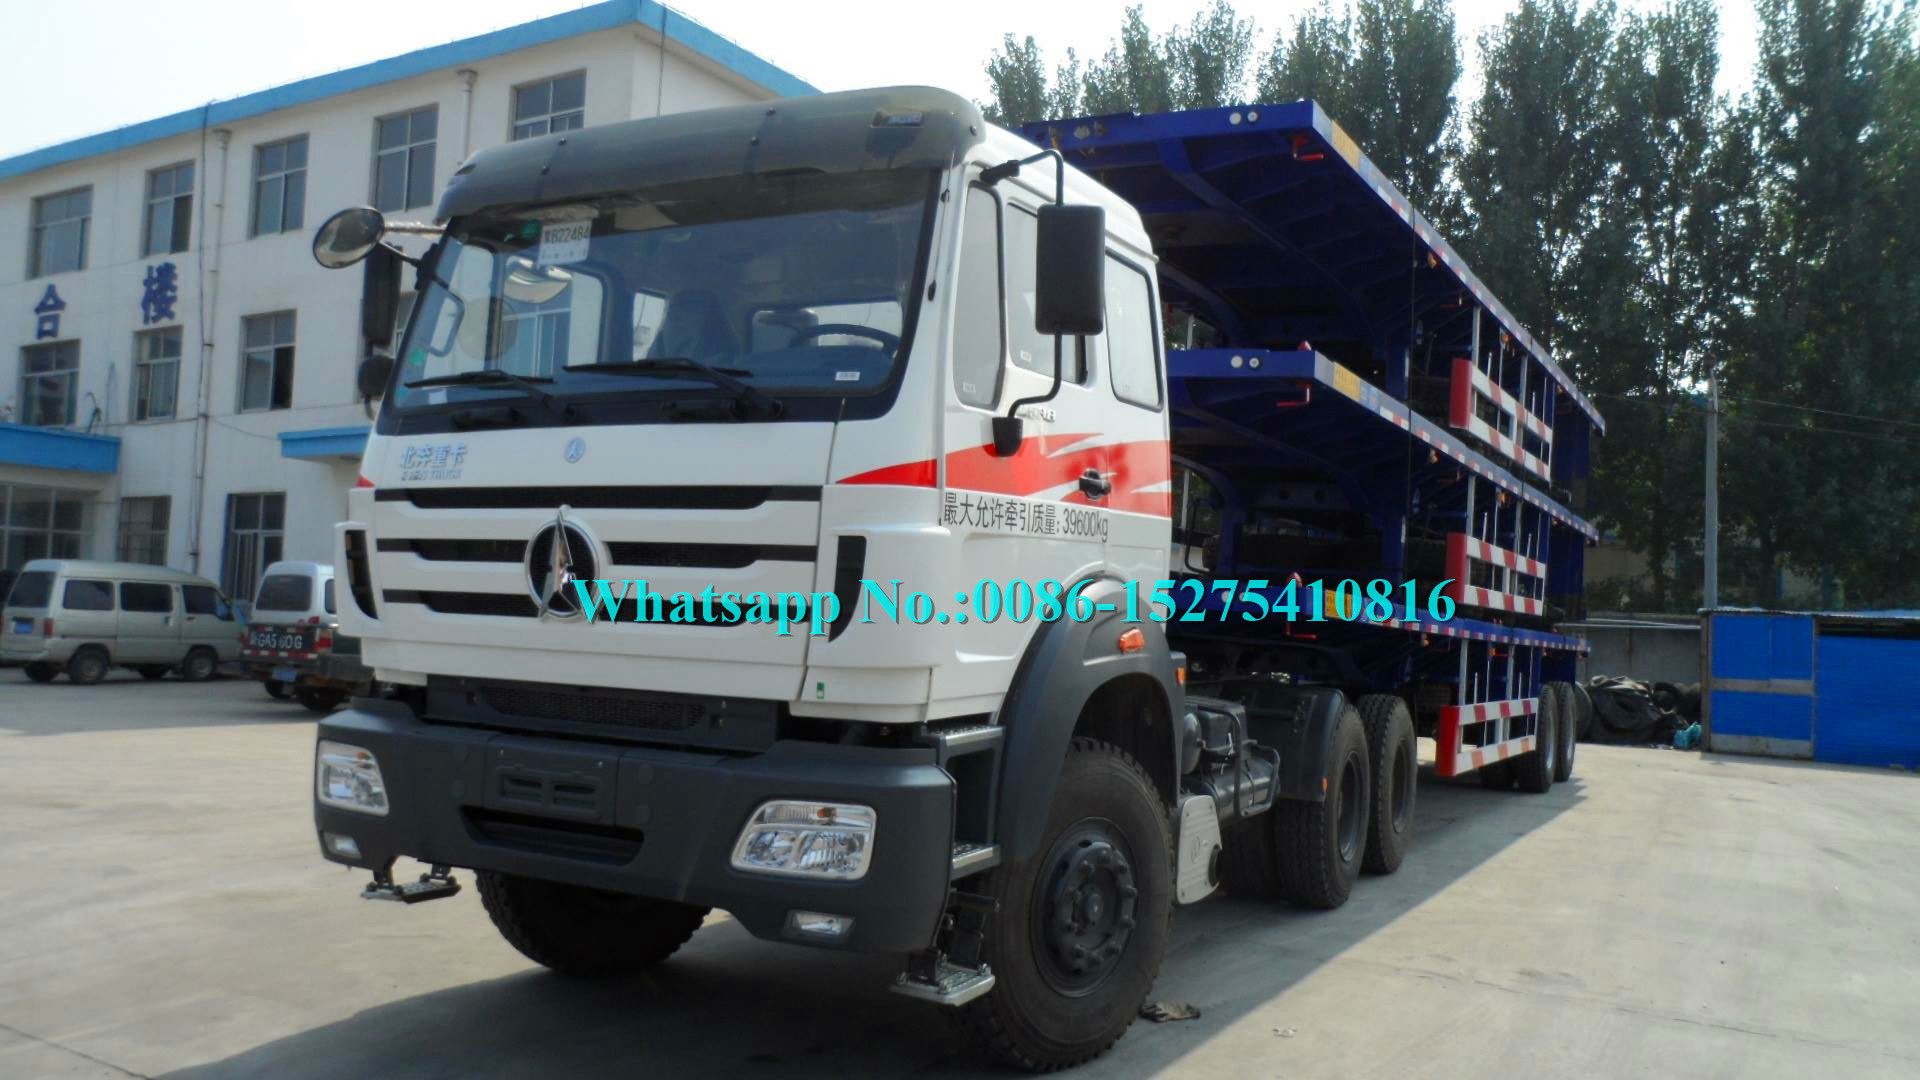 Beiben نام تجاری جدید 420hp 2642AS 6x6 تمام چرخ دنده کامیون قطار برای جاده های خشن برای DR CONGO